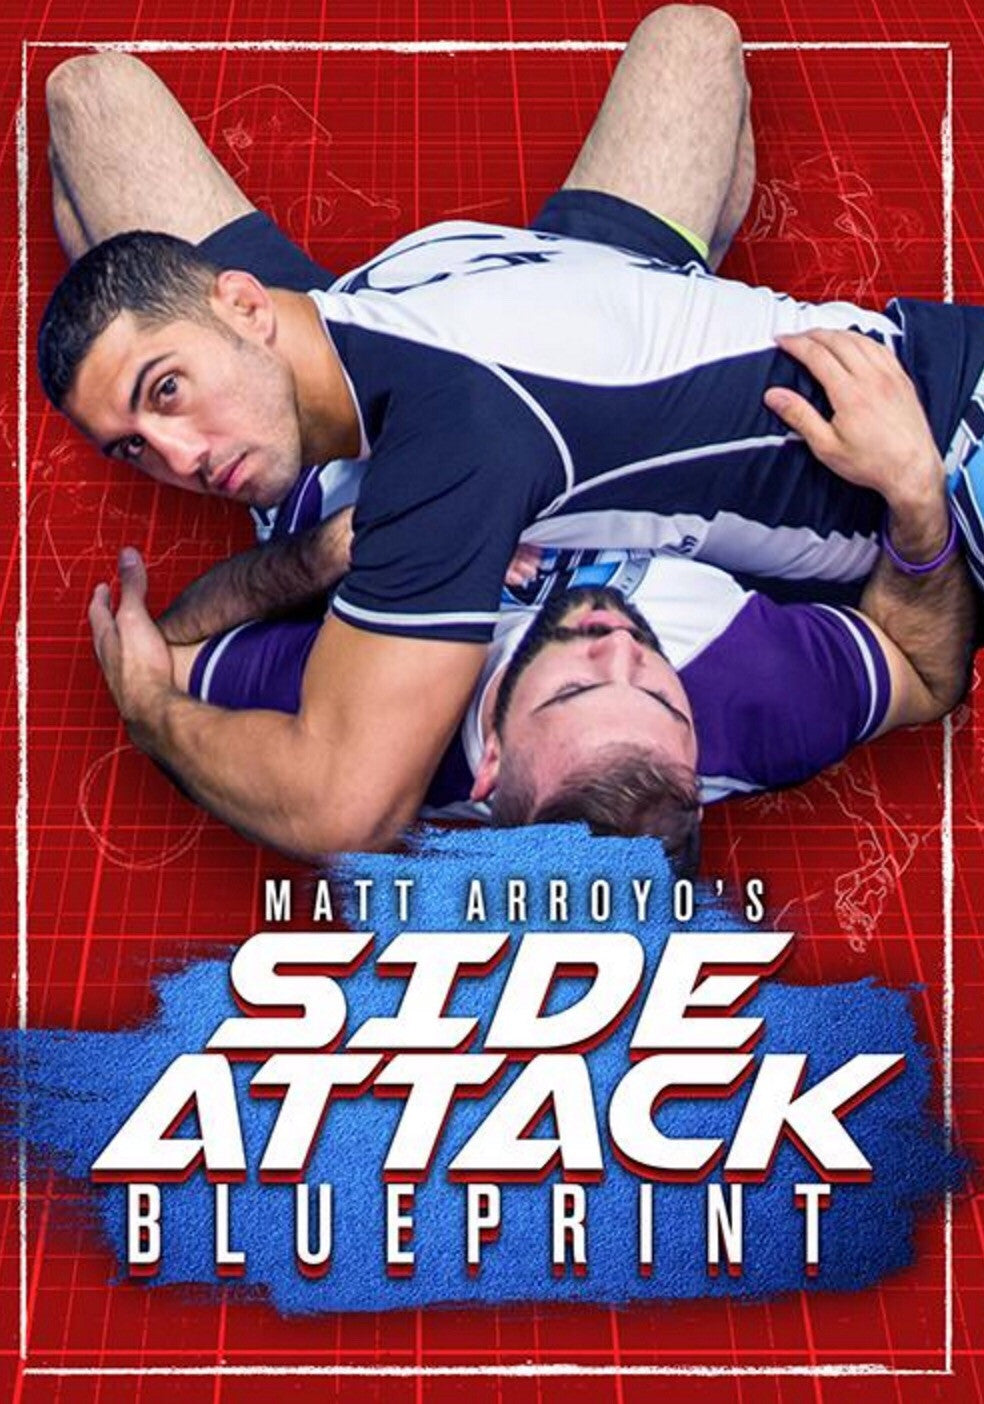 Side Attack Blueprint 3 DVD Set with Matt Arroyo